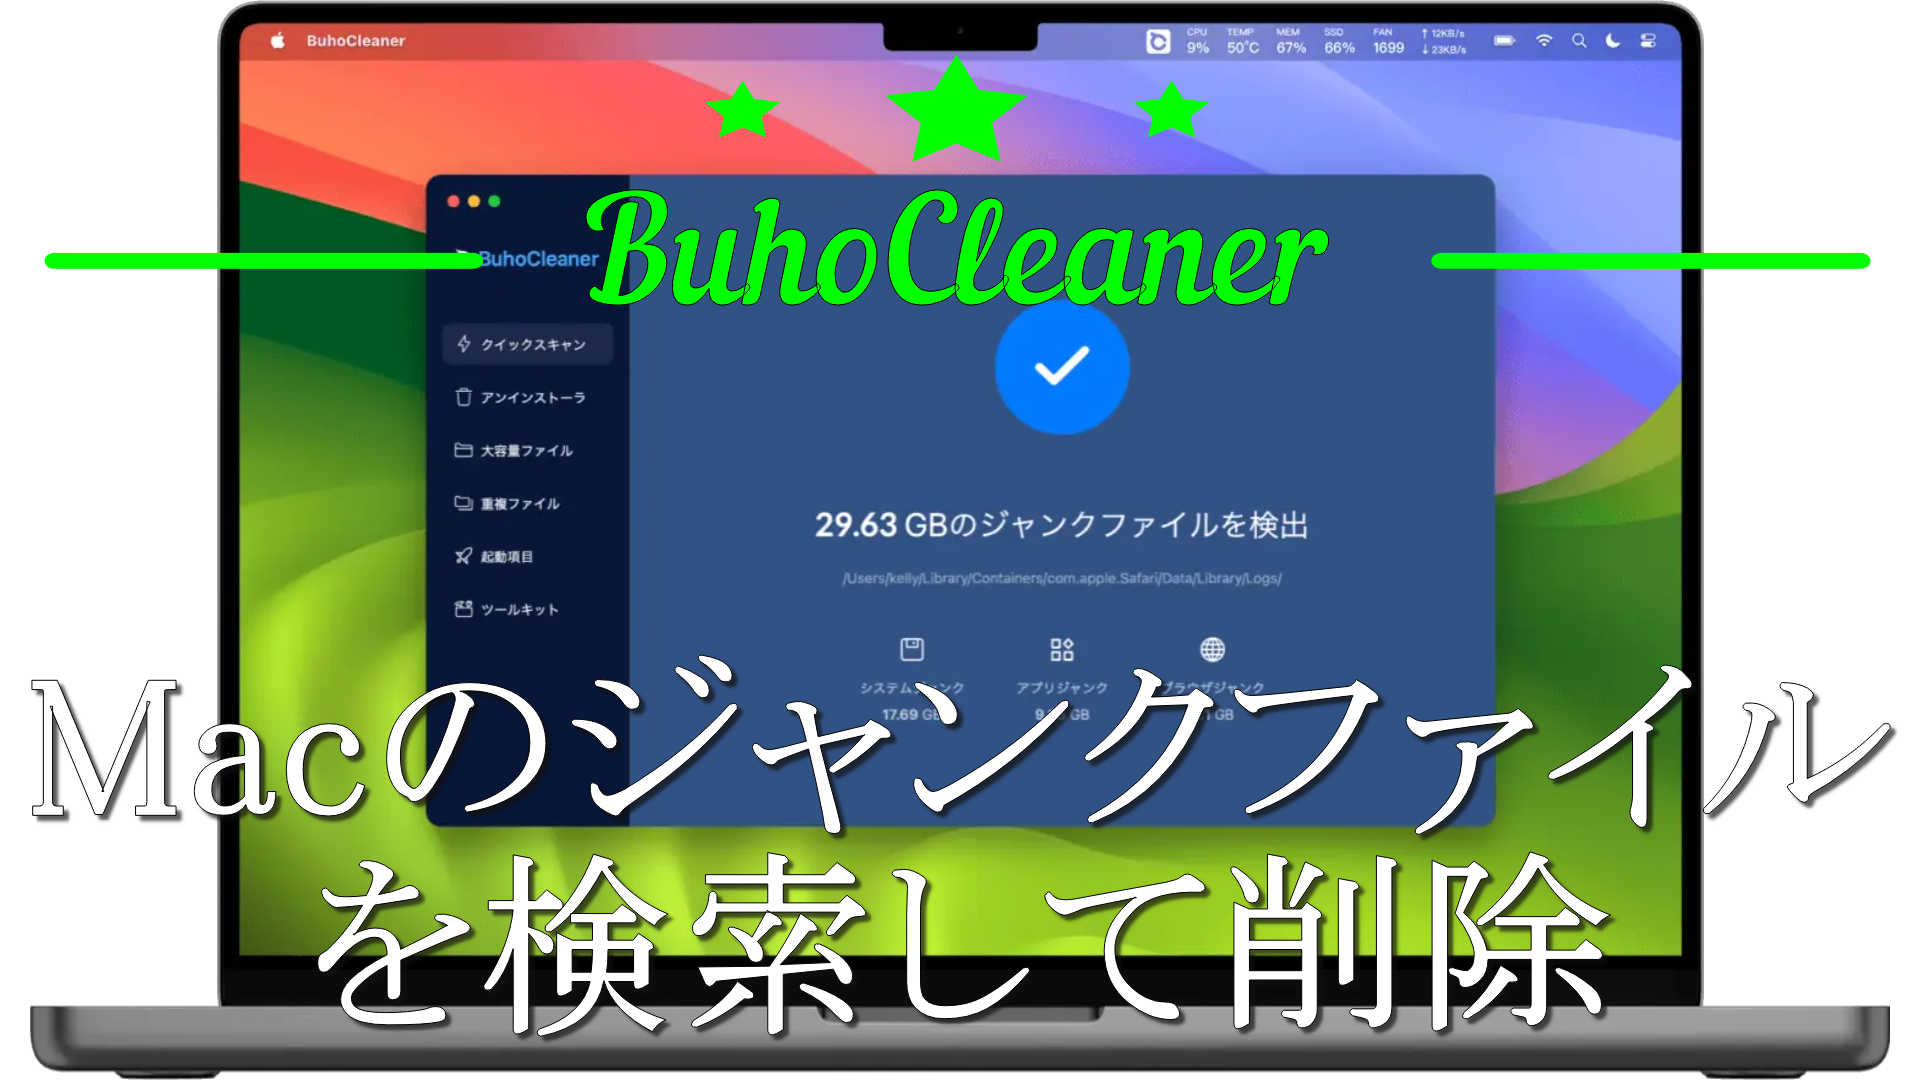 dorublog | 残ったジャンクファイルを検索して削除 Macクリーナーアプリ BuhoCleaner(ブホクリーナー) 評価 使用方法 ダウンロード